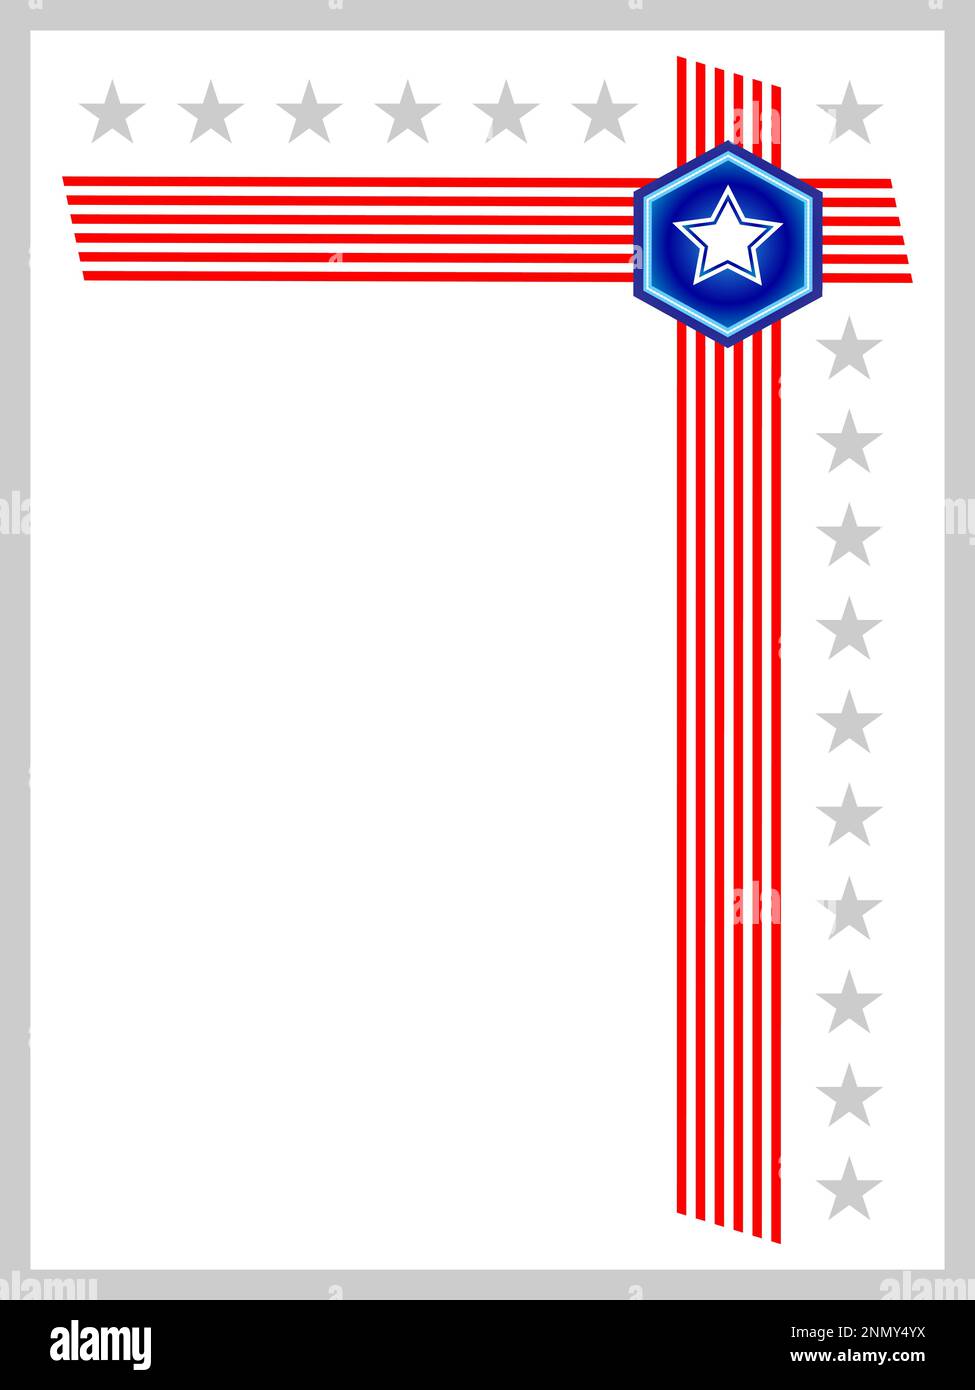 USA flag simboli angolo cornice border mockup con spazio vuoto per il tuo testo. Illustrazione Vettoriale